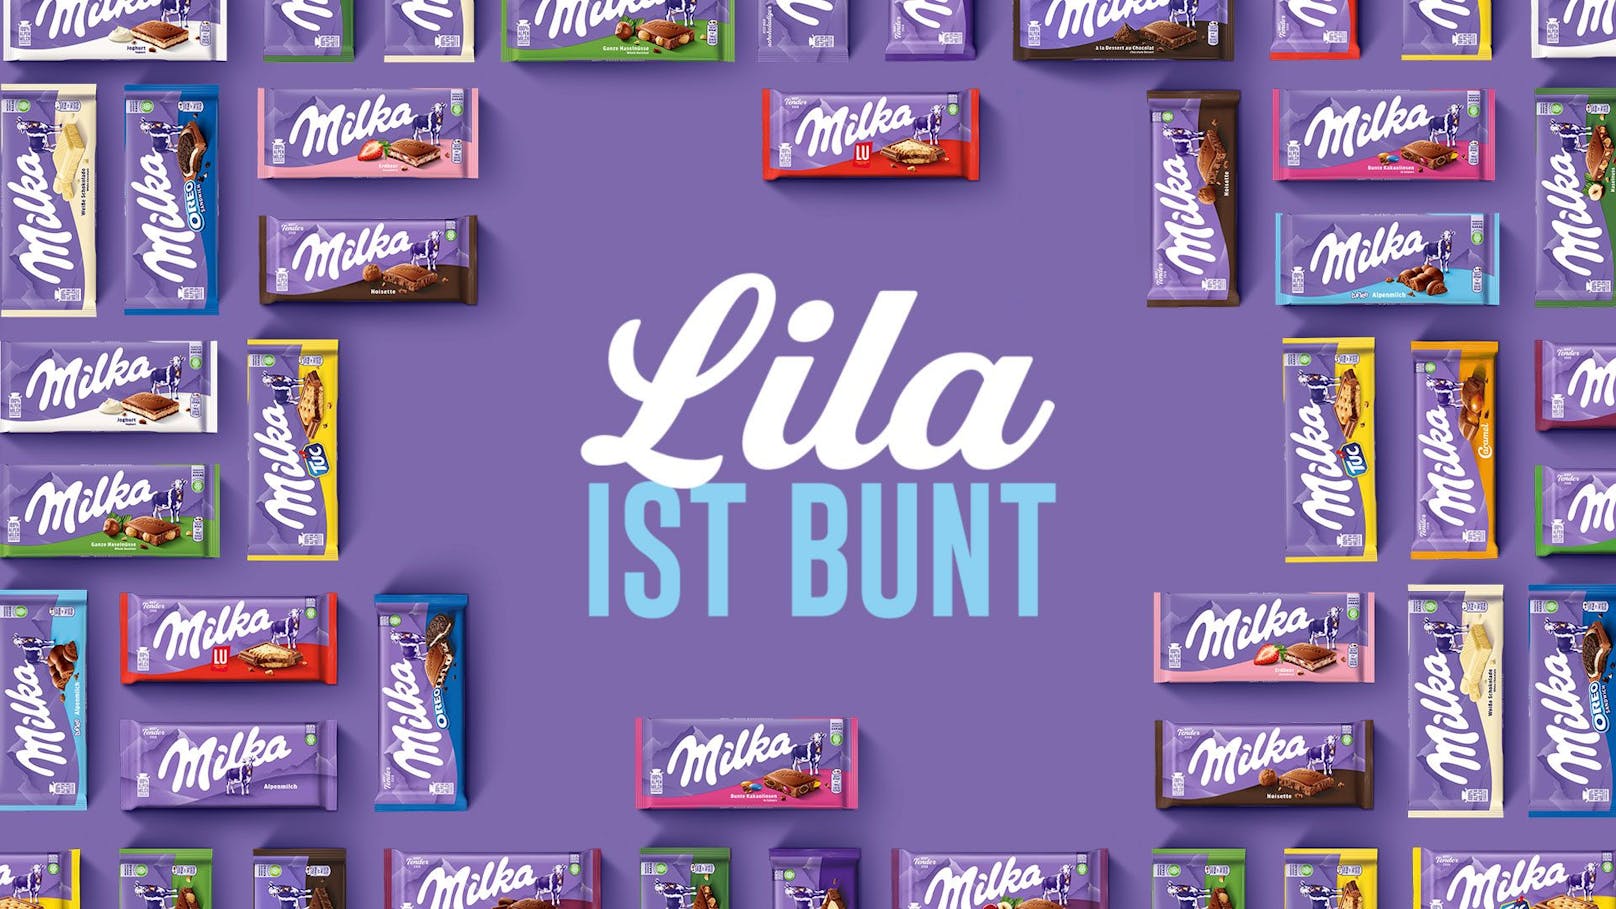 "Lila ist bunt": Im Rahmen der Kampagne dreht sich alles um die Vielfalt des Milka-Tafelportfolios.